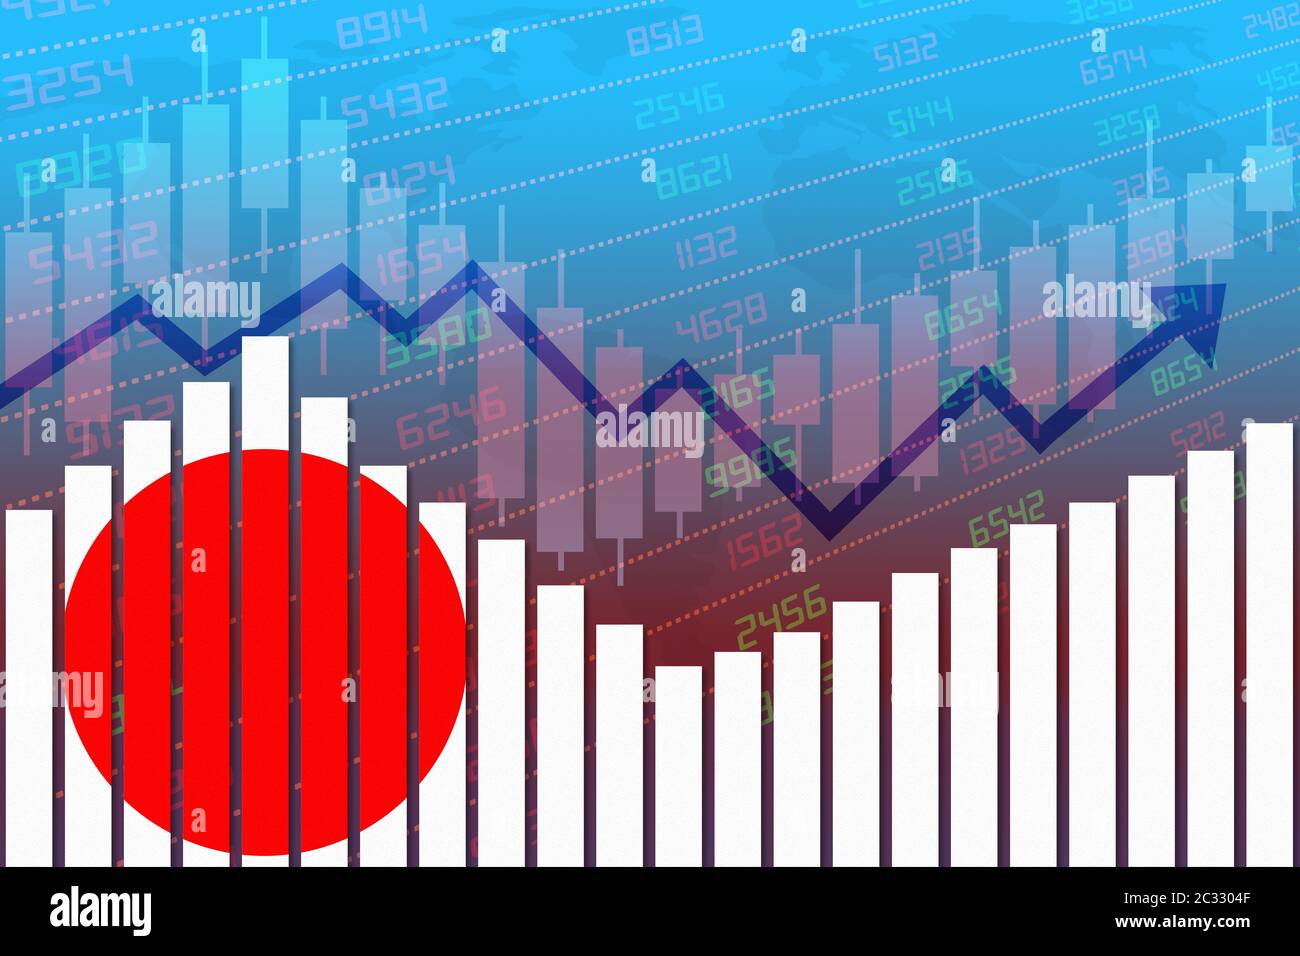 Drapeau du Japon sur le diagramme à barres concept de reprise économique et d'amélioration des affaires après la crise comme Covid-19 ou d'autres catastrophes comme l'économie et le bussin Banque D'Images